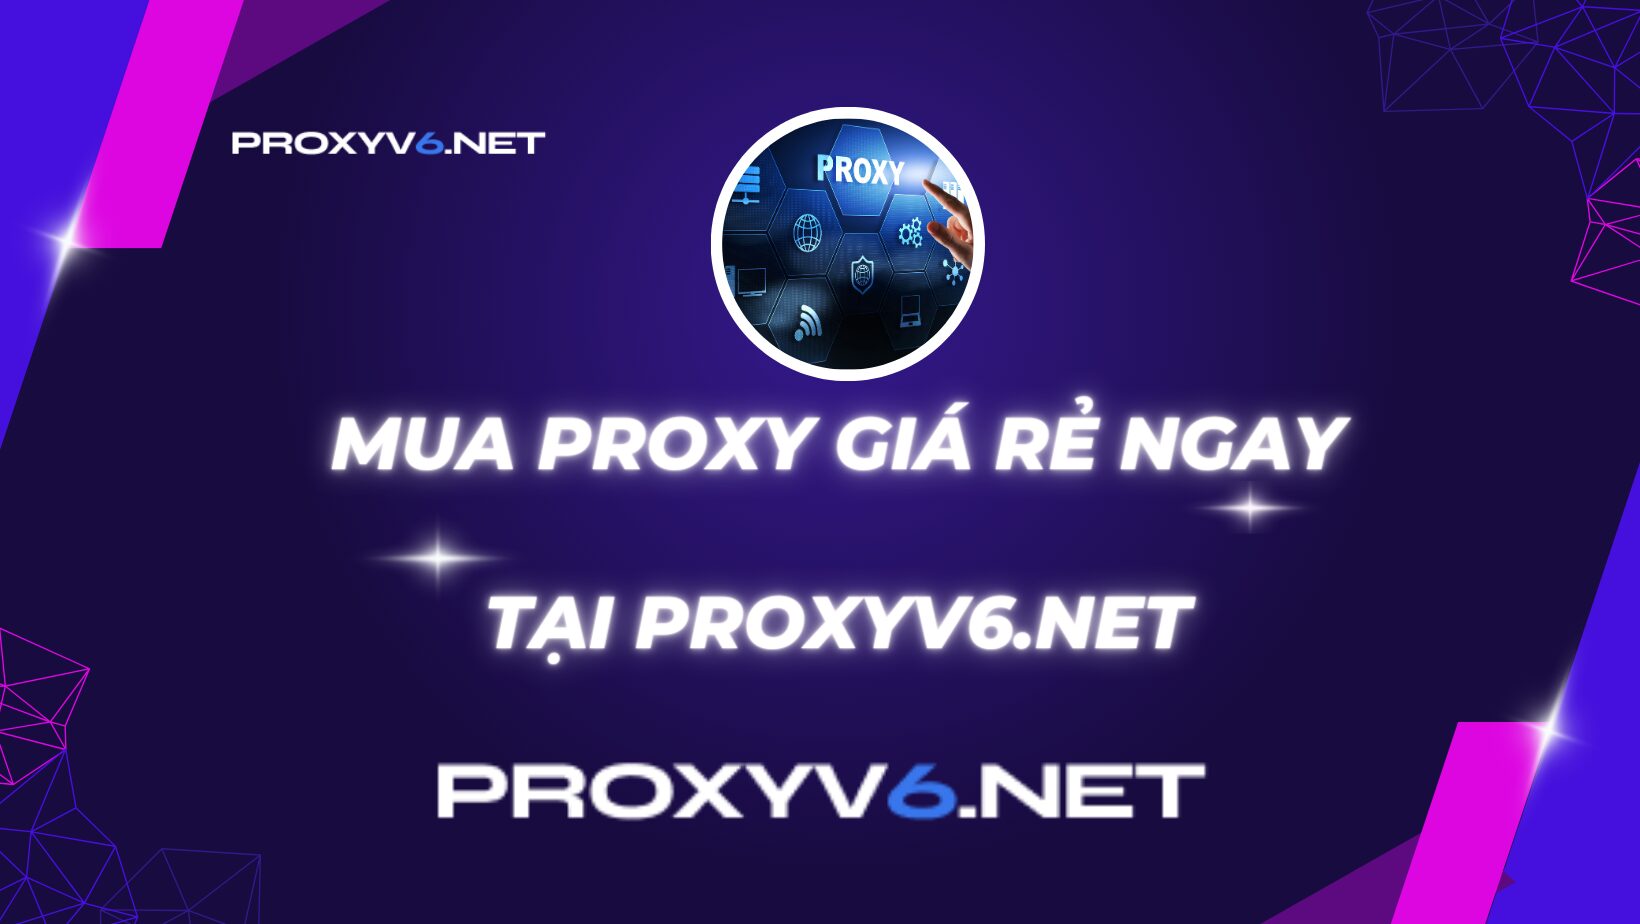 Mua Proxy giá rẻ ngay tại Proxyv6.net